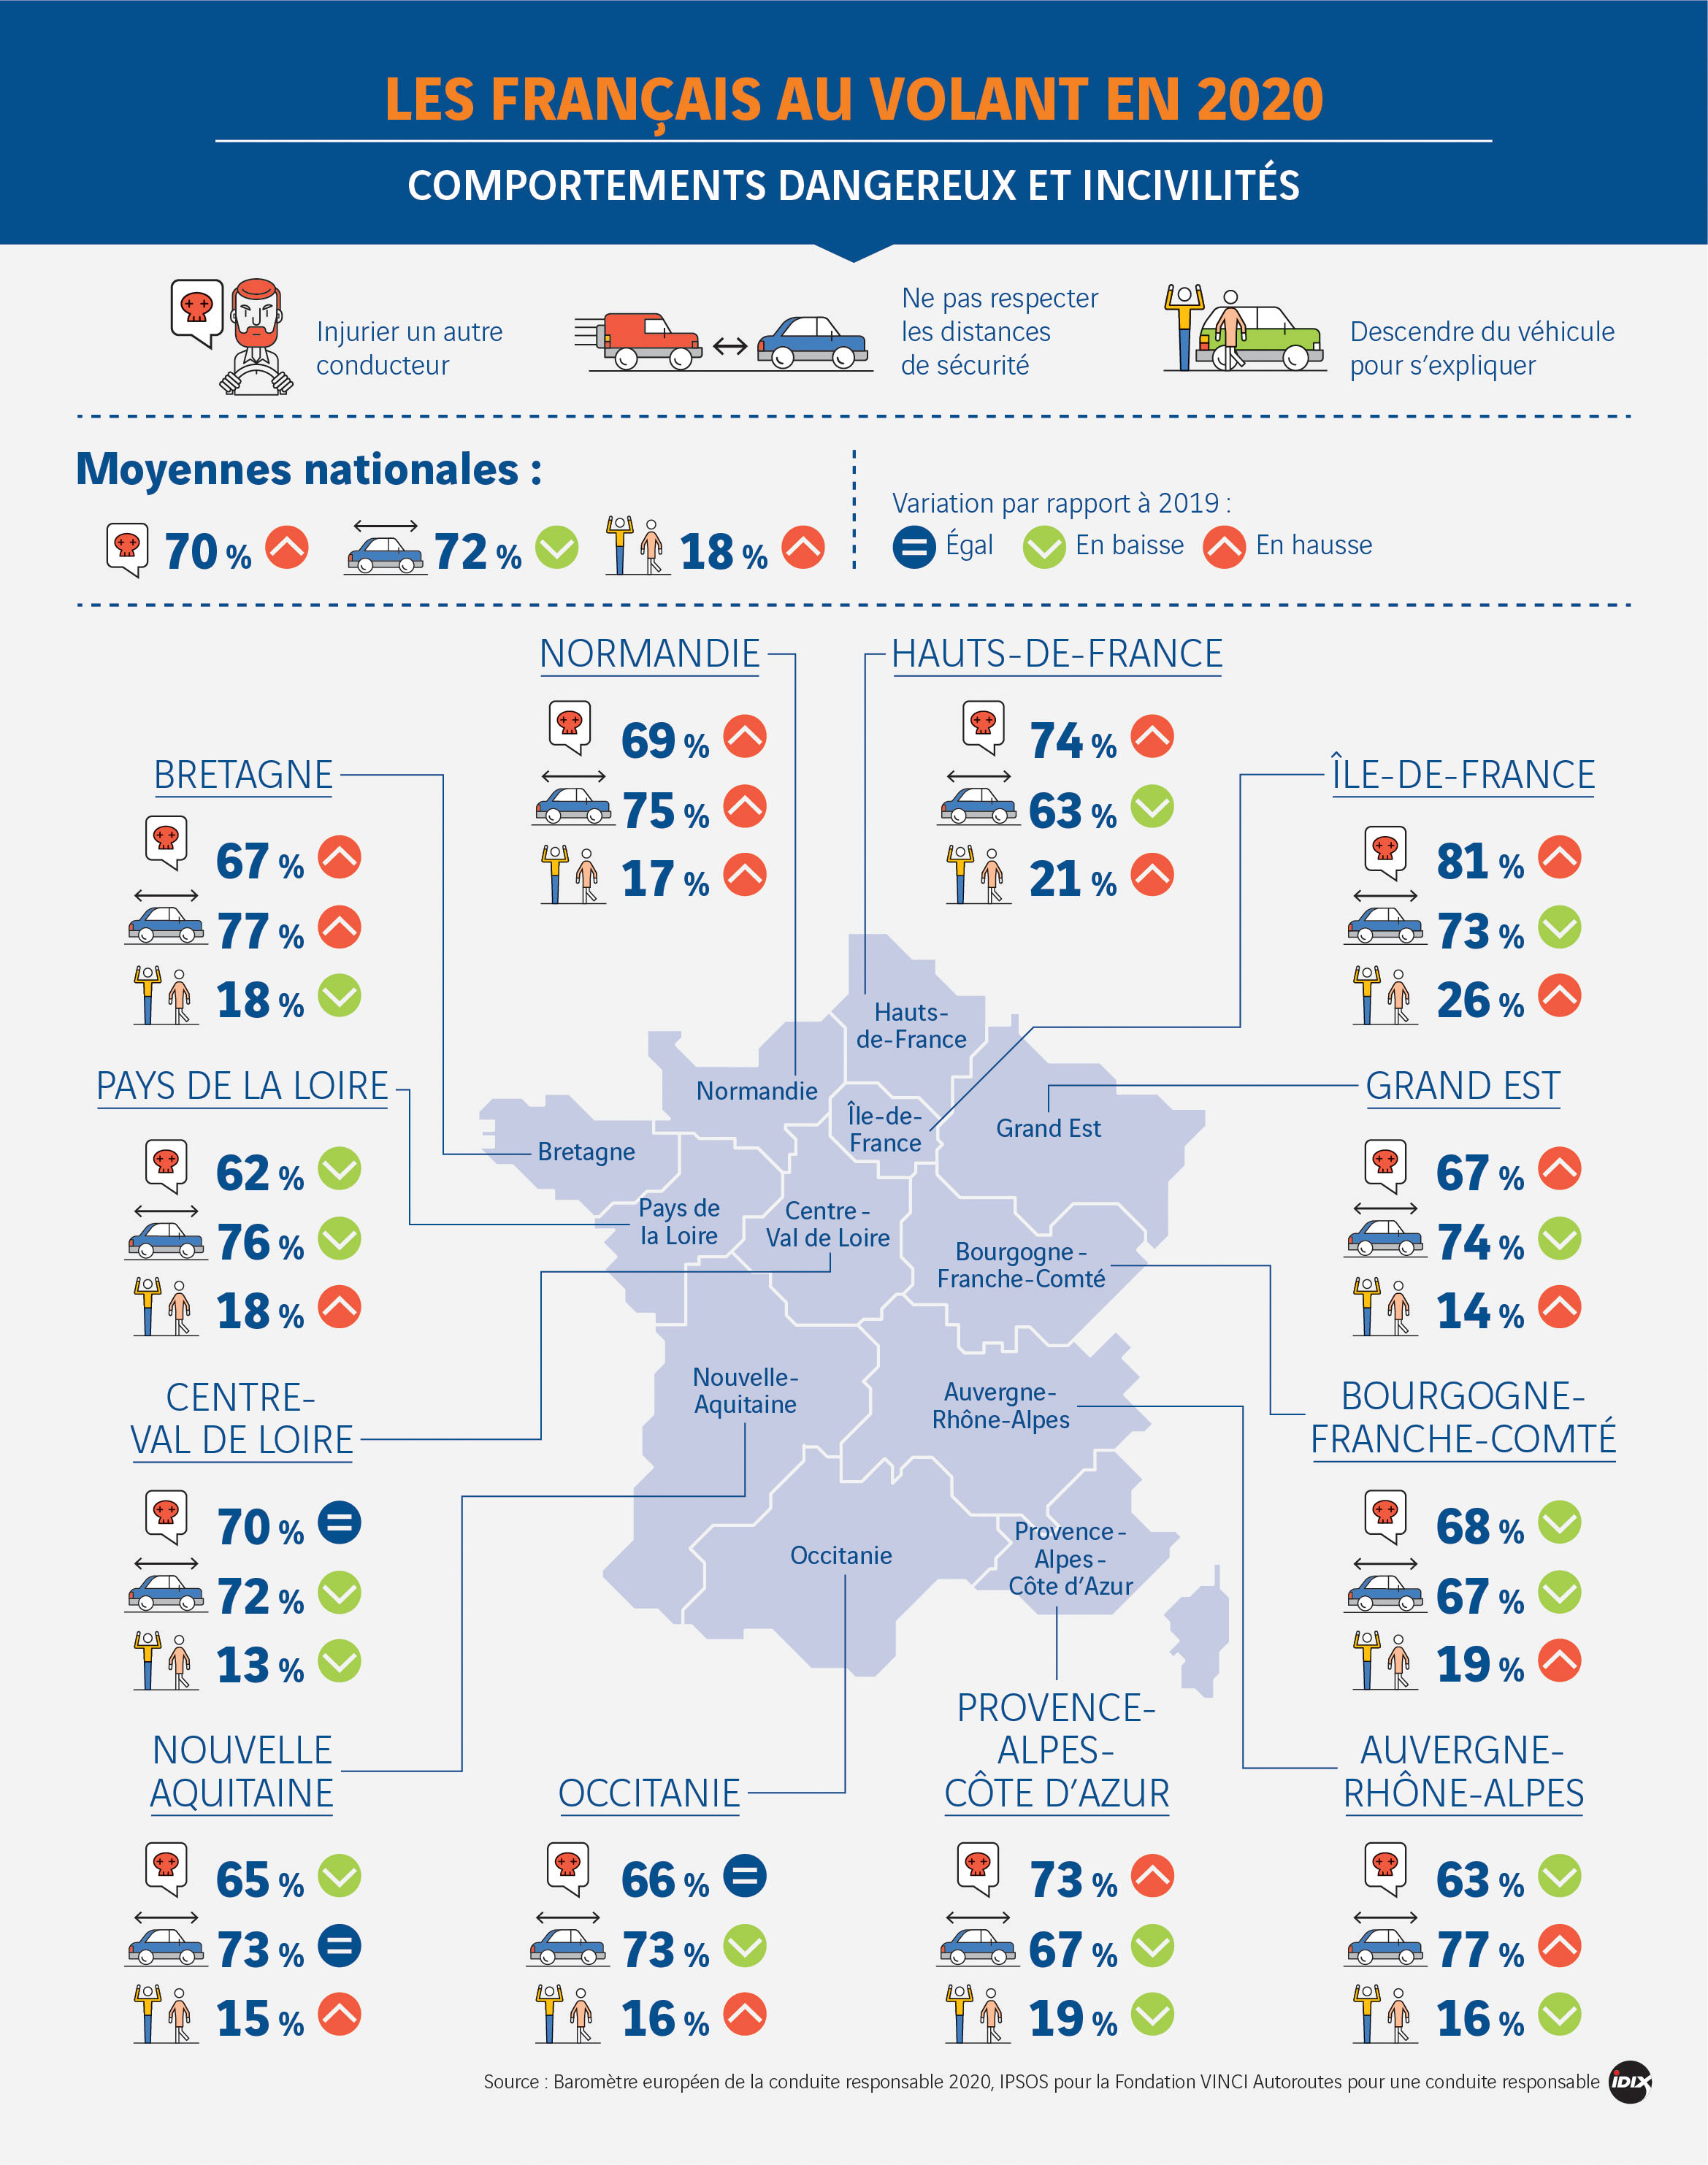 Les Français au volant en 2020 : carte des comportements dangereux et incivilités